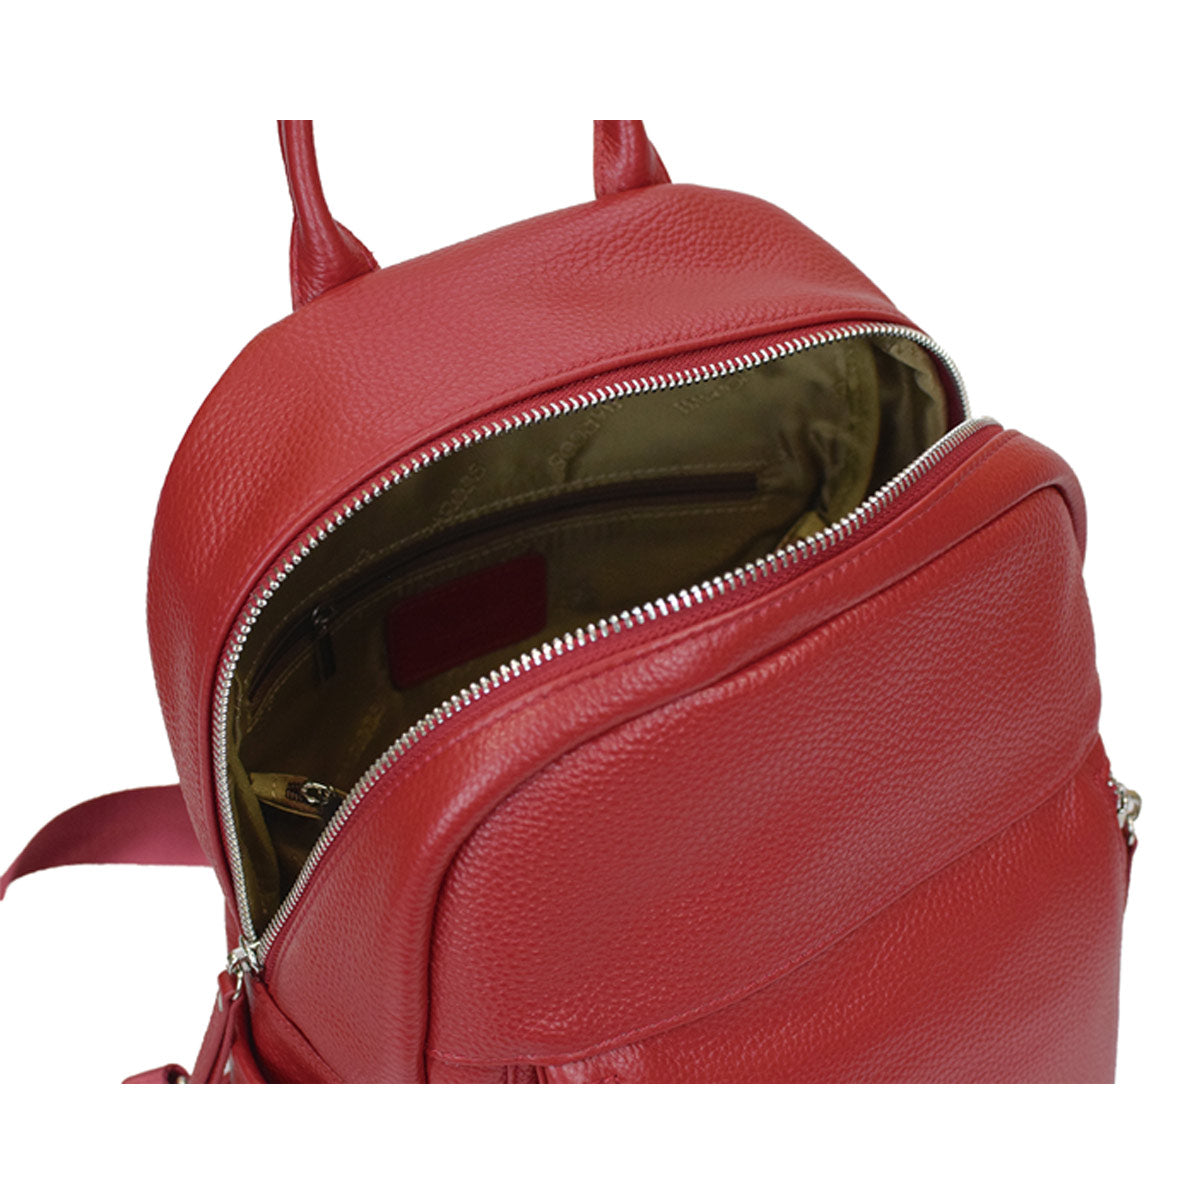 Shrink Leather Backpack and Long Wallet Bundle